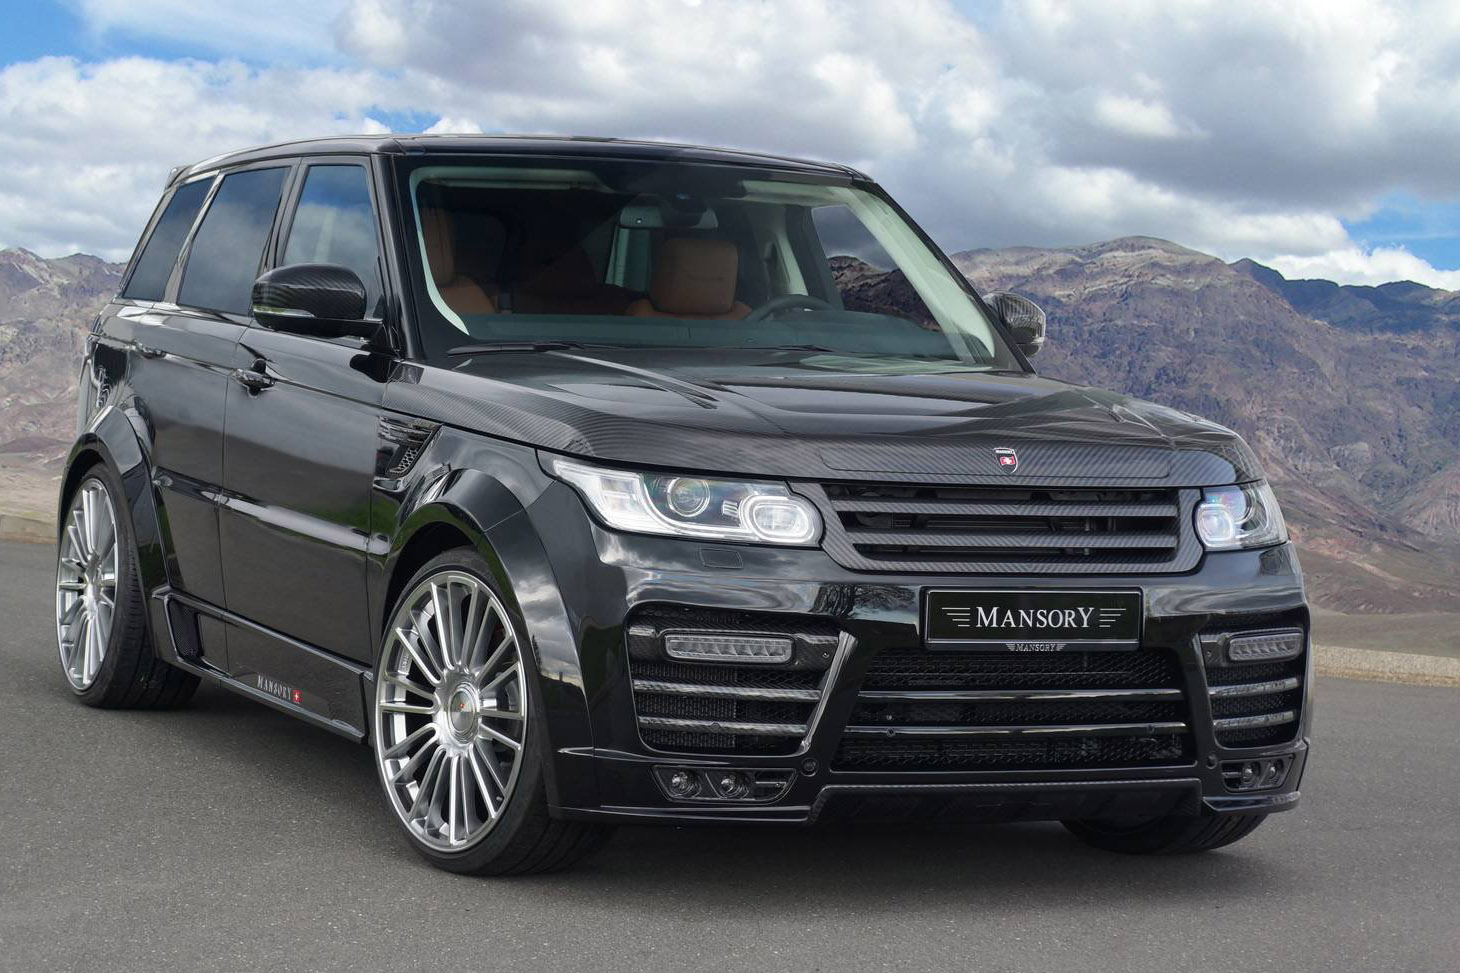 2014 Mansory Range Rover Sport Gets Full Carbon Fiber